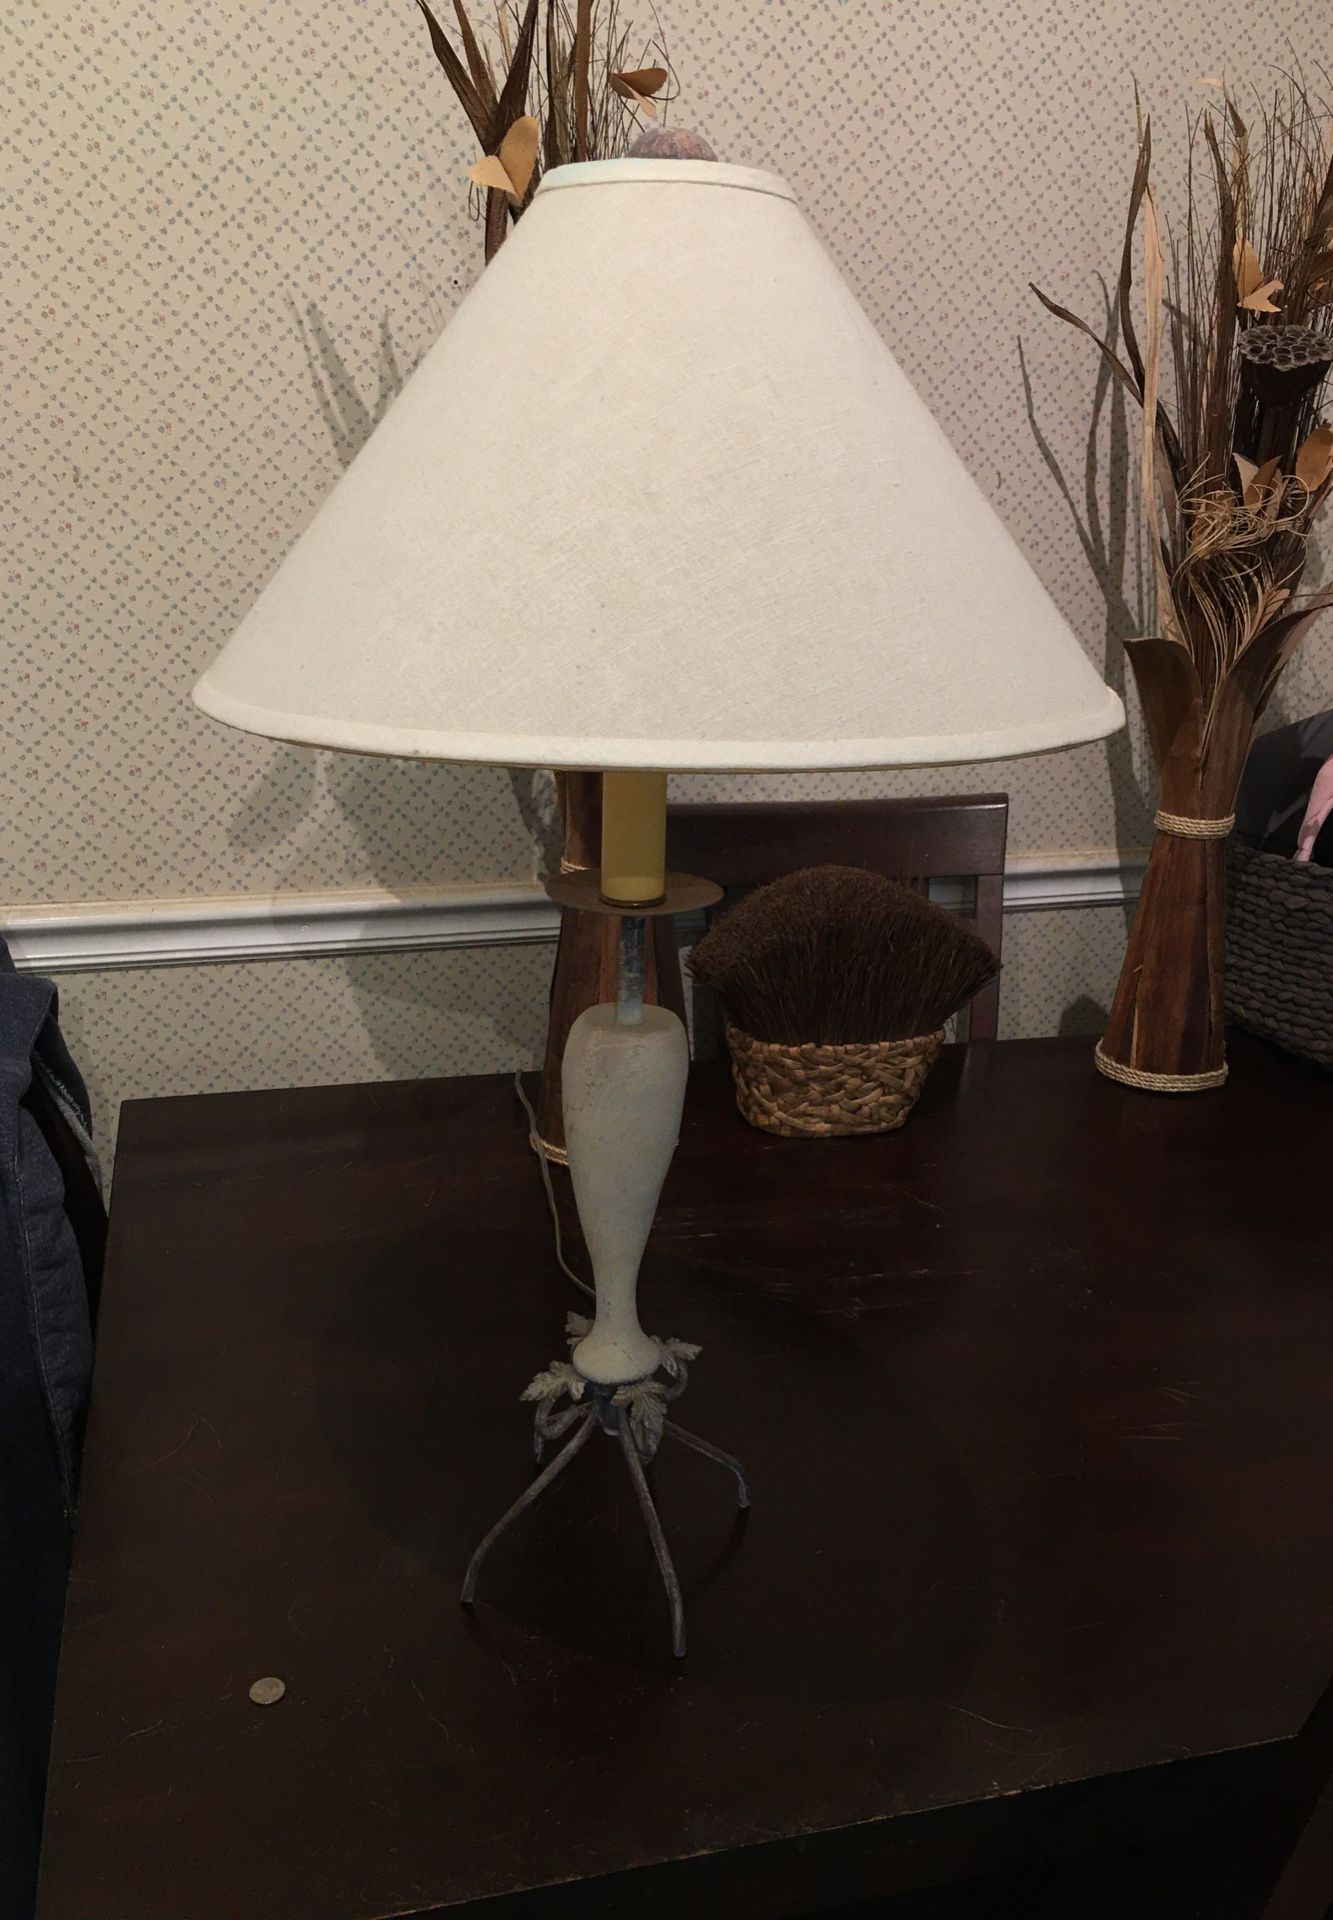 Nice looking Lamp